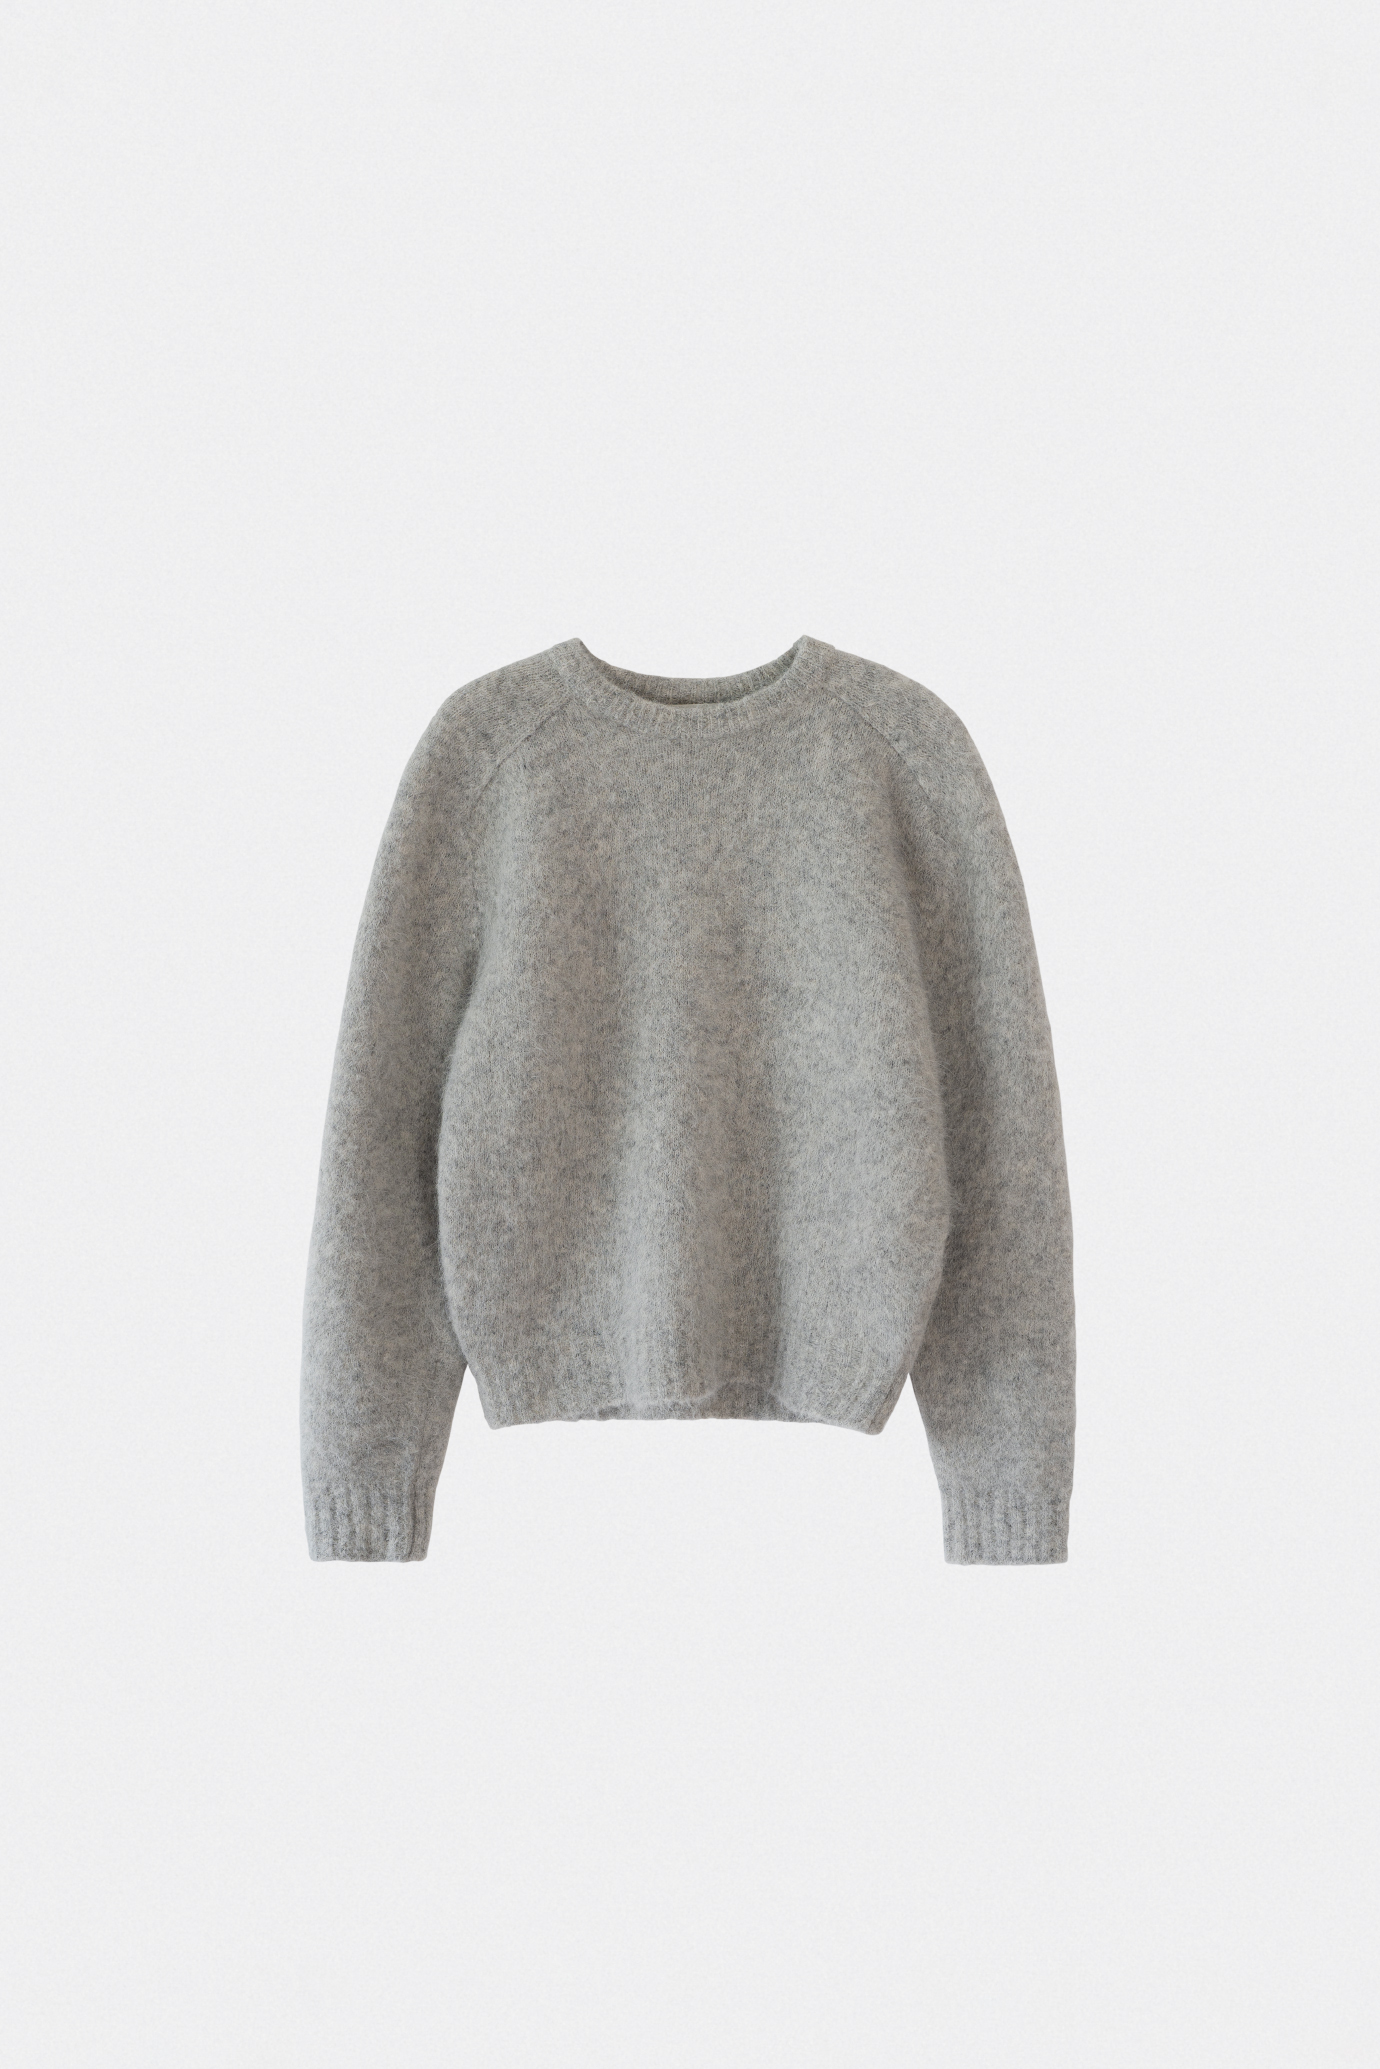 18809_Alpaca Exclusive Sweater [ New Season / 10% DC ] 4일 PM 5 마감 [주문일로부터14일이내배송]